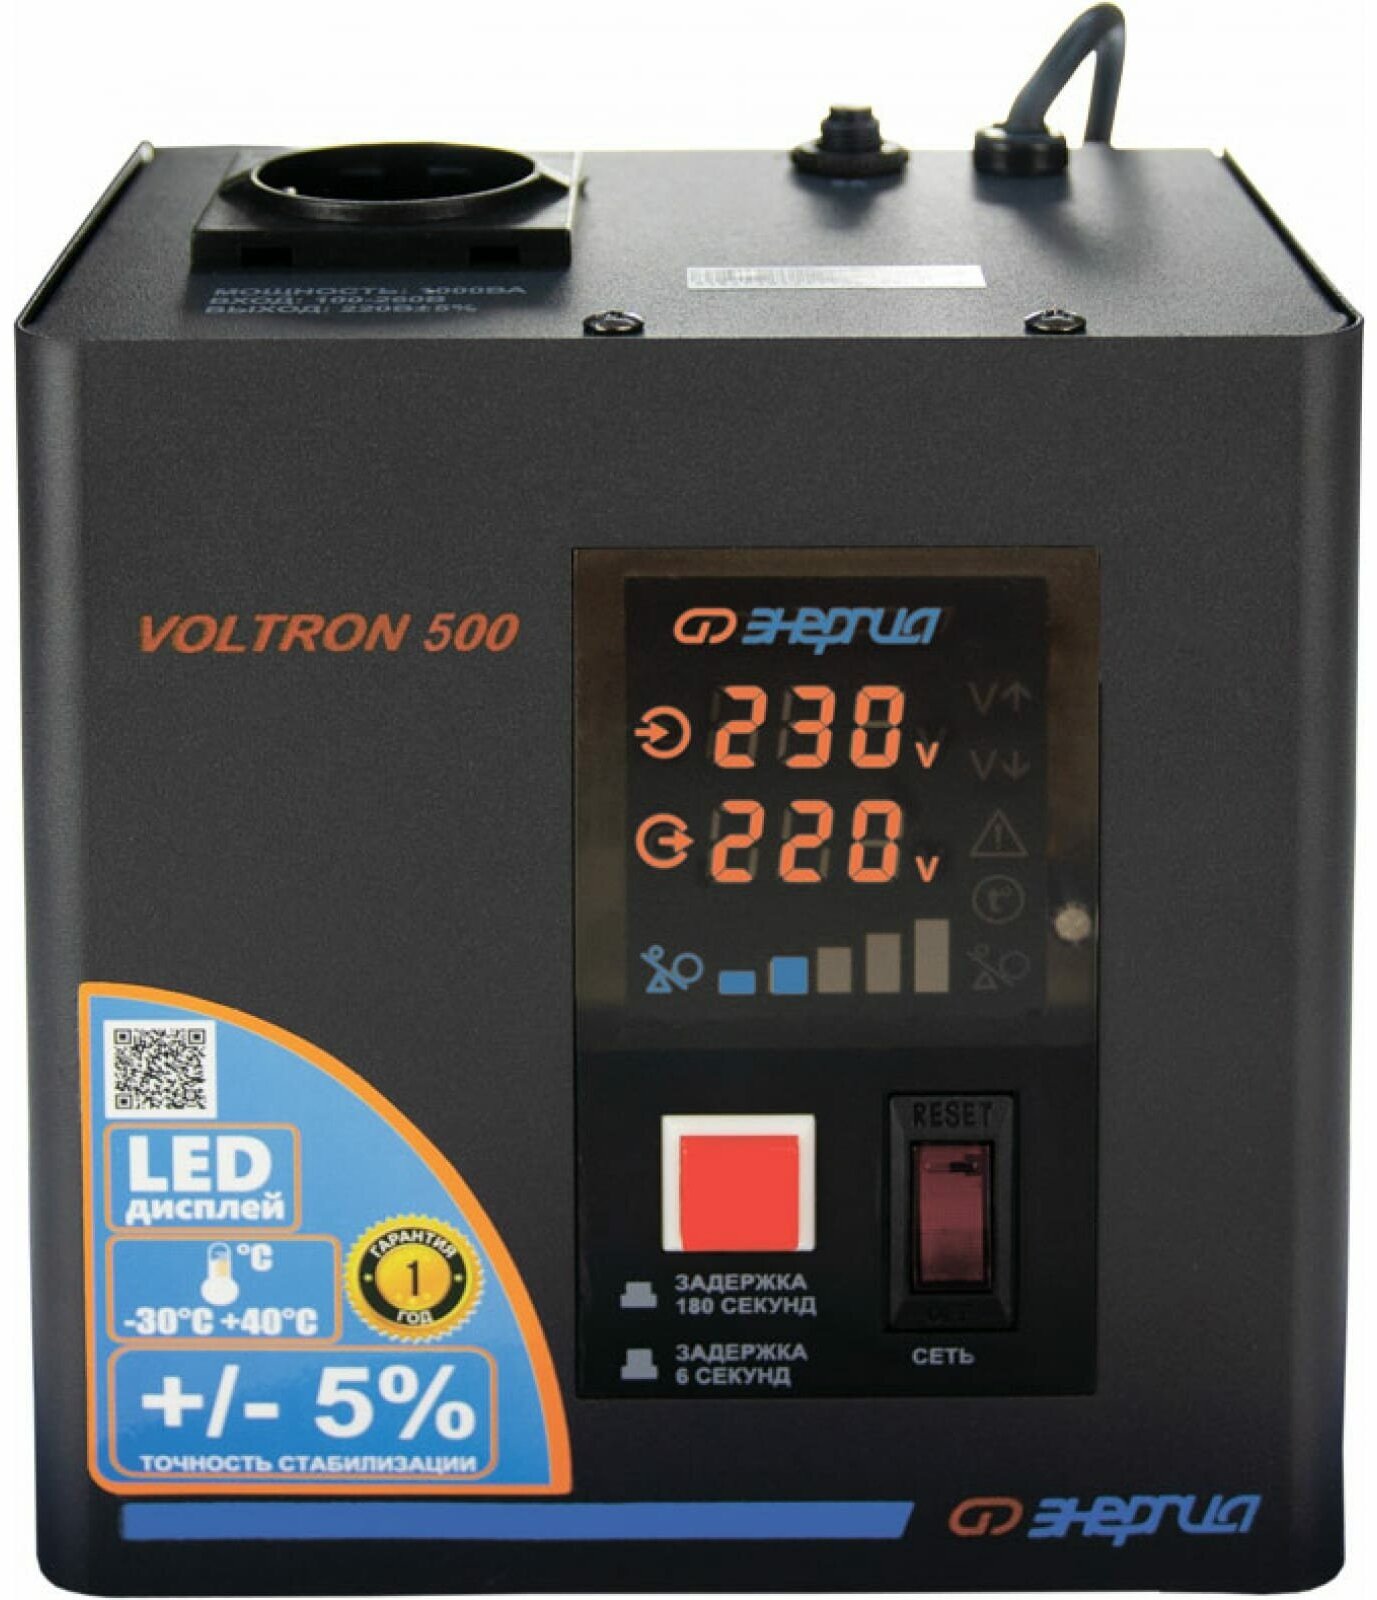 Стабилизатор напряжения однофазный Энергия Voltron 500 (5%) черный 500 ВА 350 Вт 170 мм 115 мм 165 мм 3.5 кг - фотография № 11